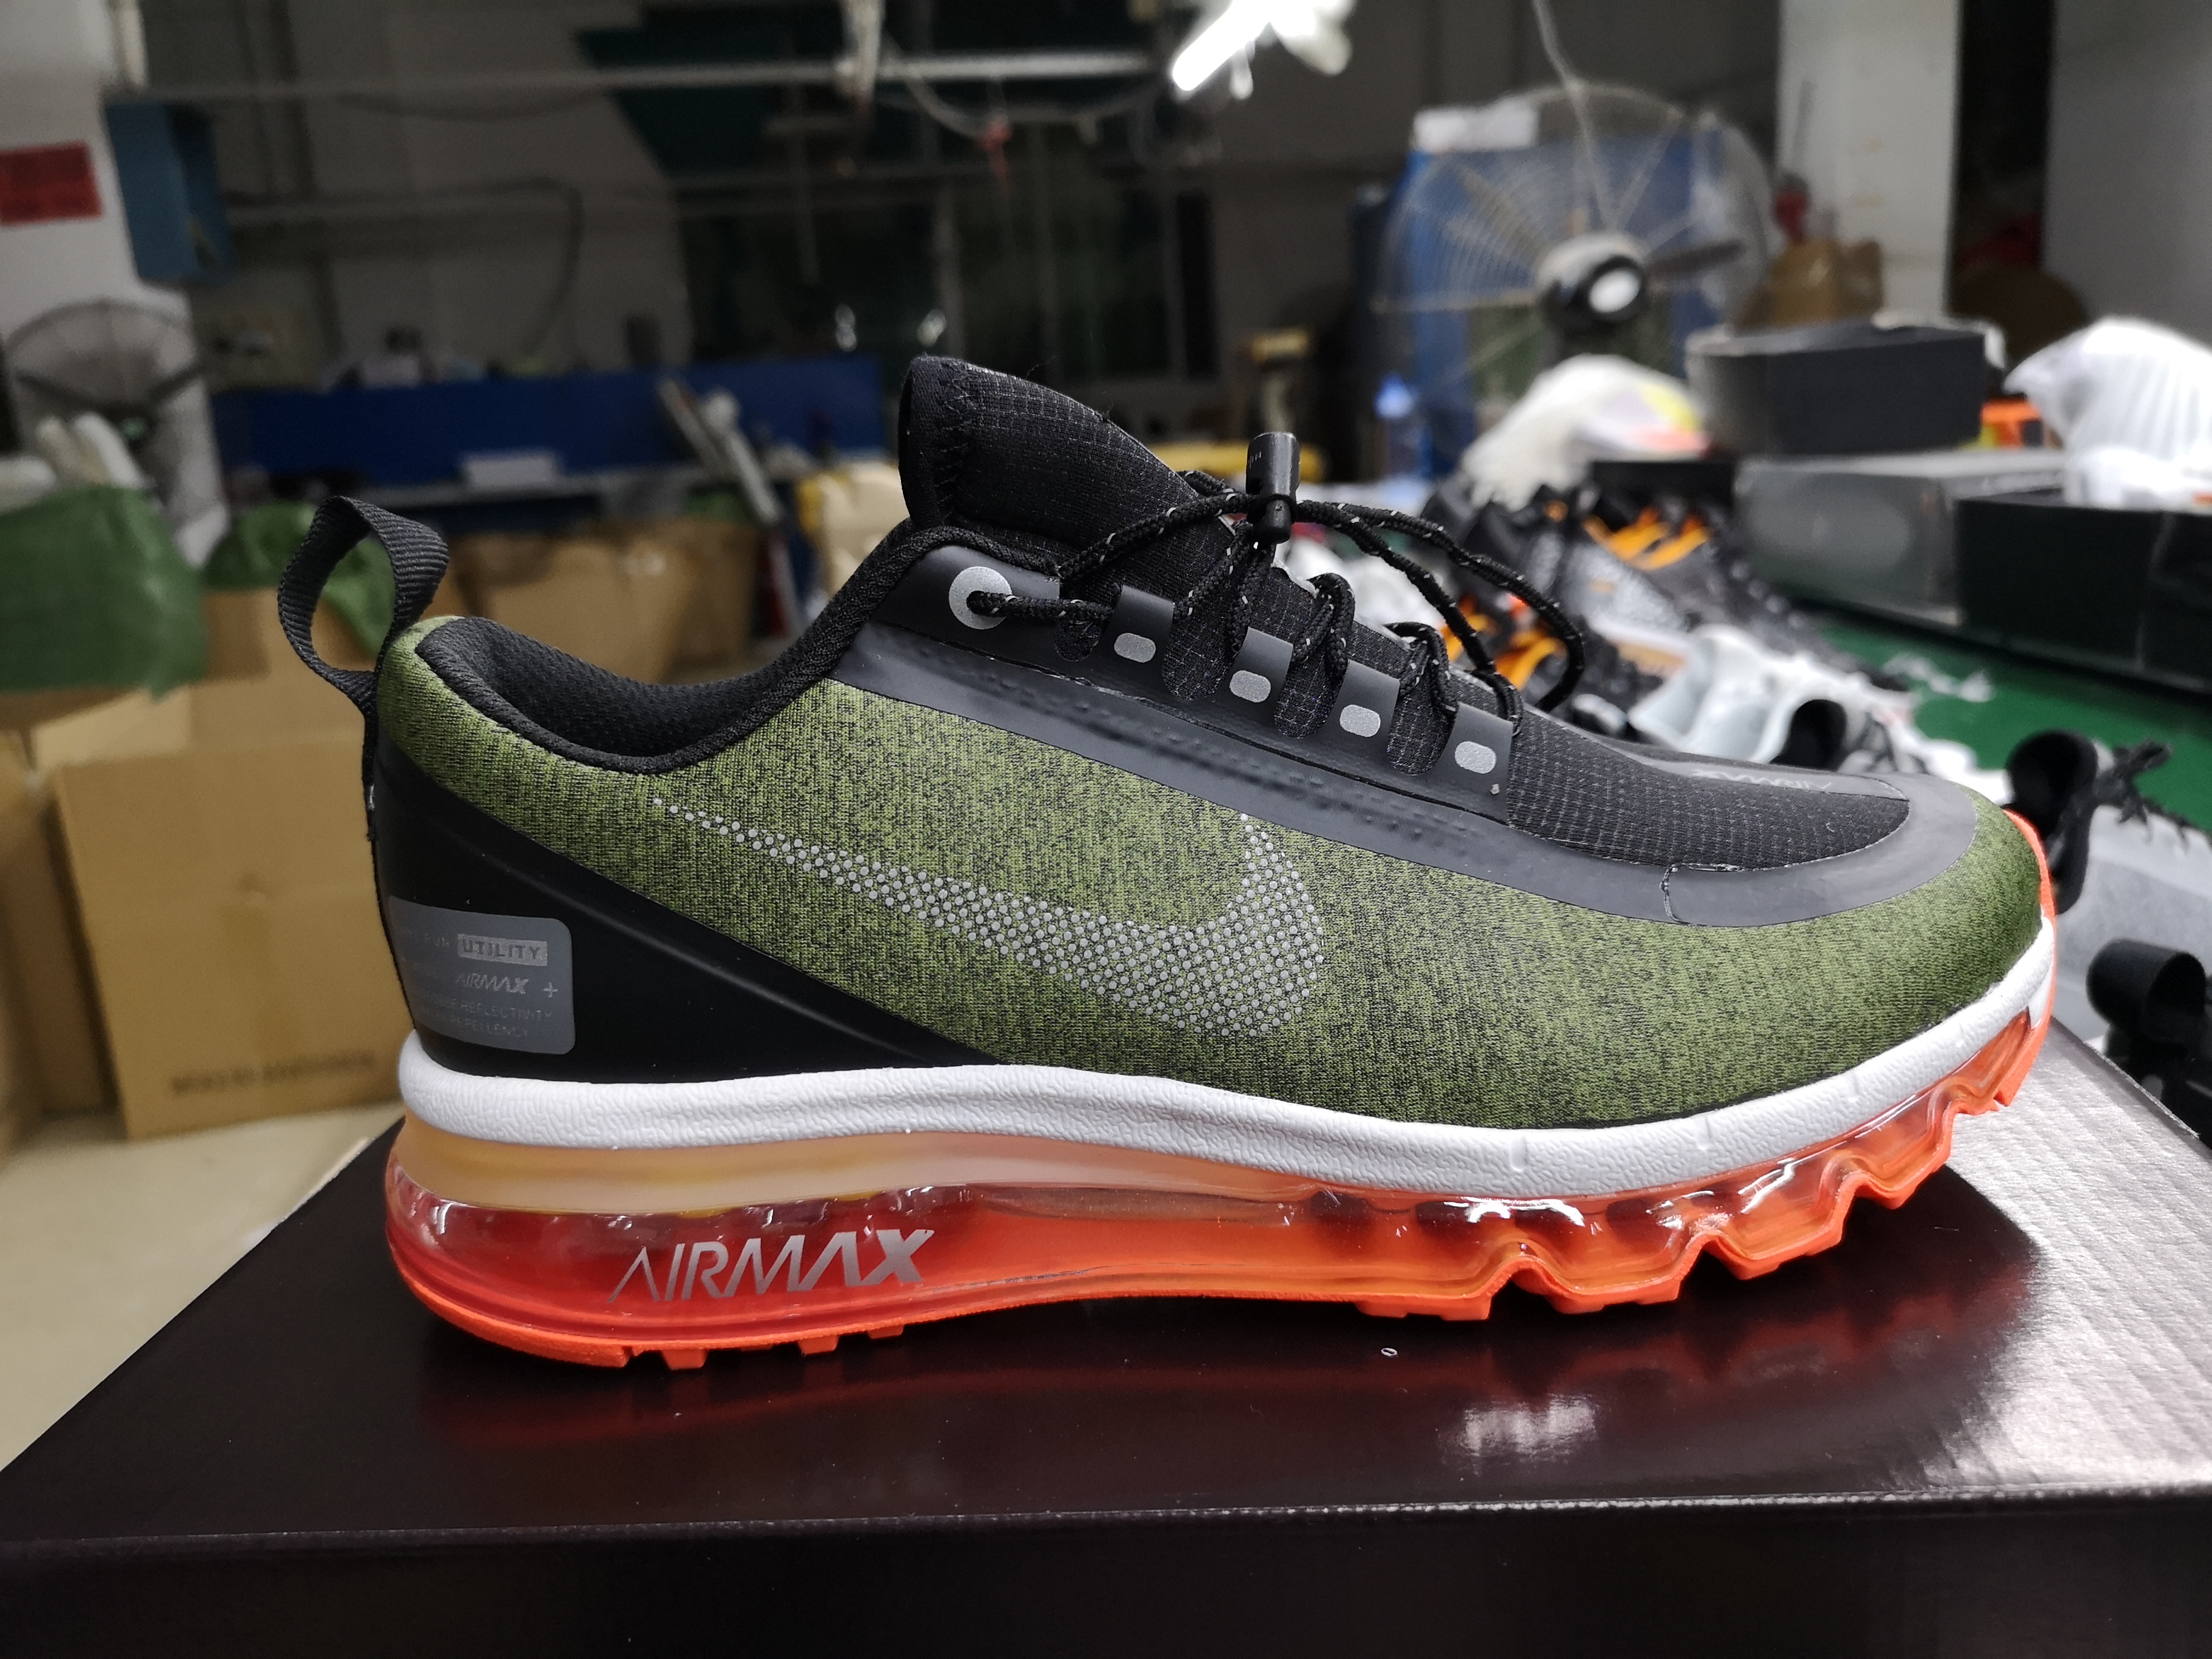 Nike Air Max 2017 Waterproof Green Black Orange Shoes